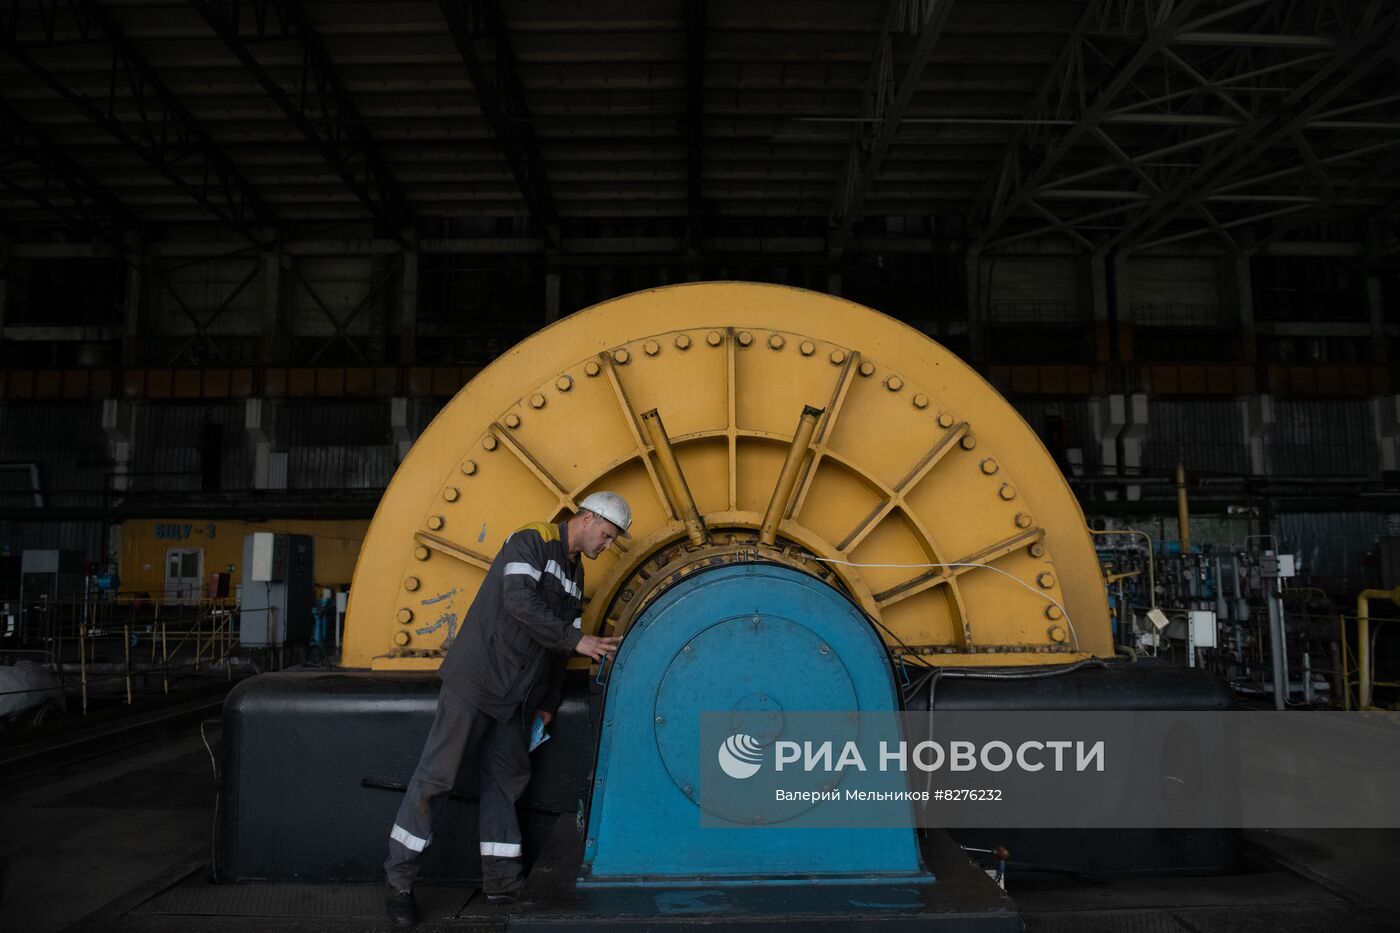 Восстановительные работы на Луганской ТЭС